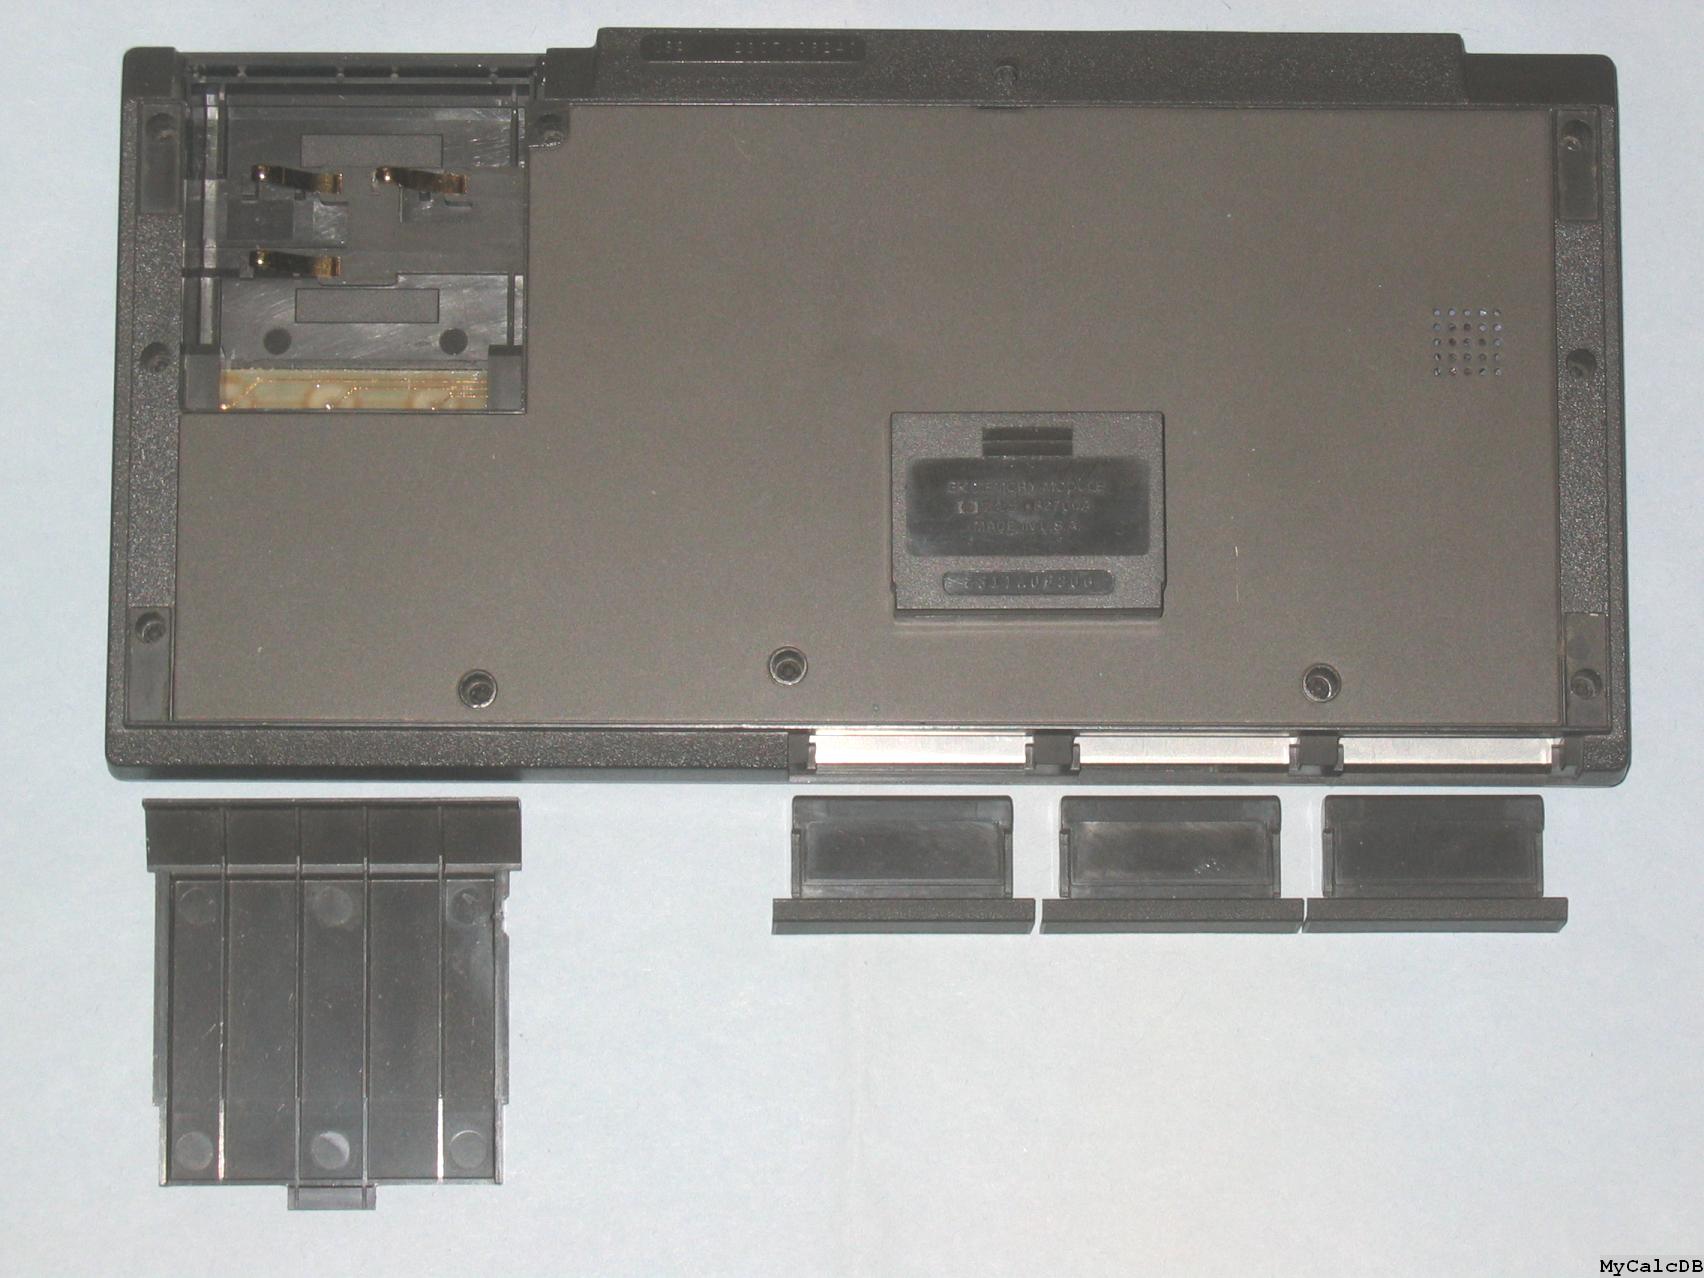 Hewlett-Packard 75C